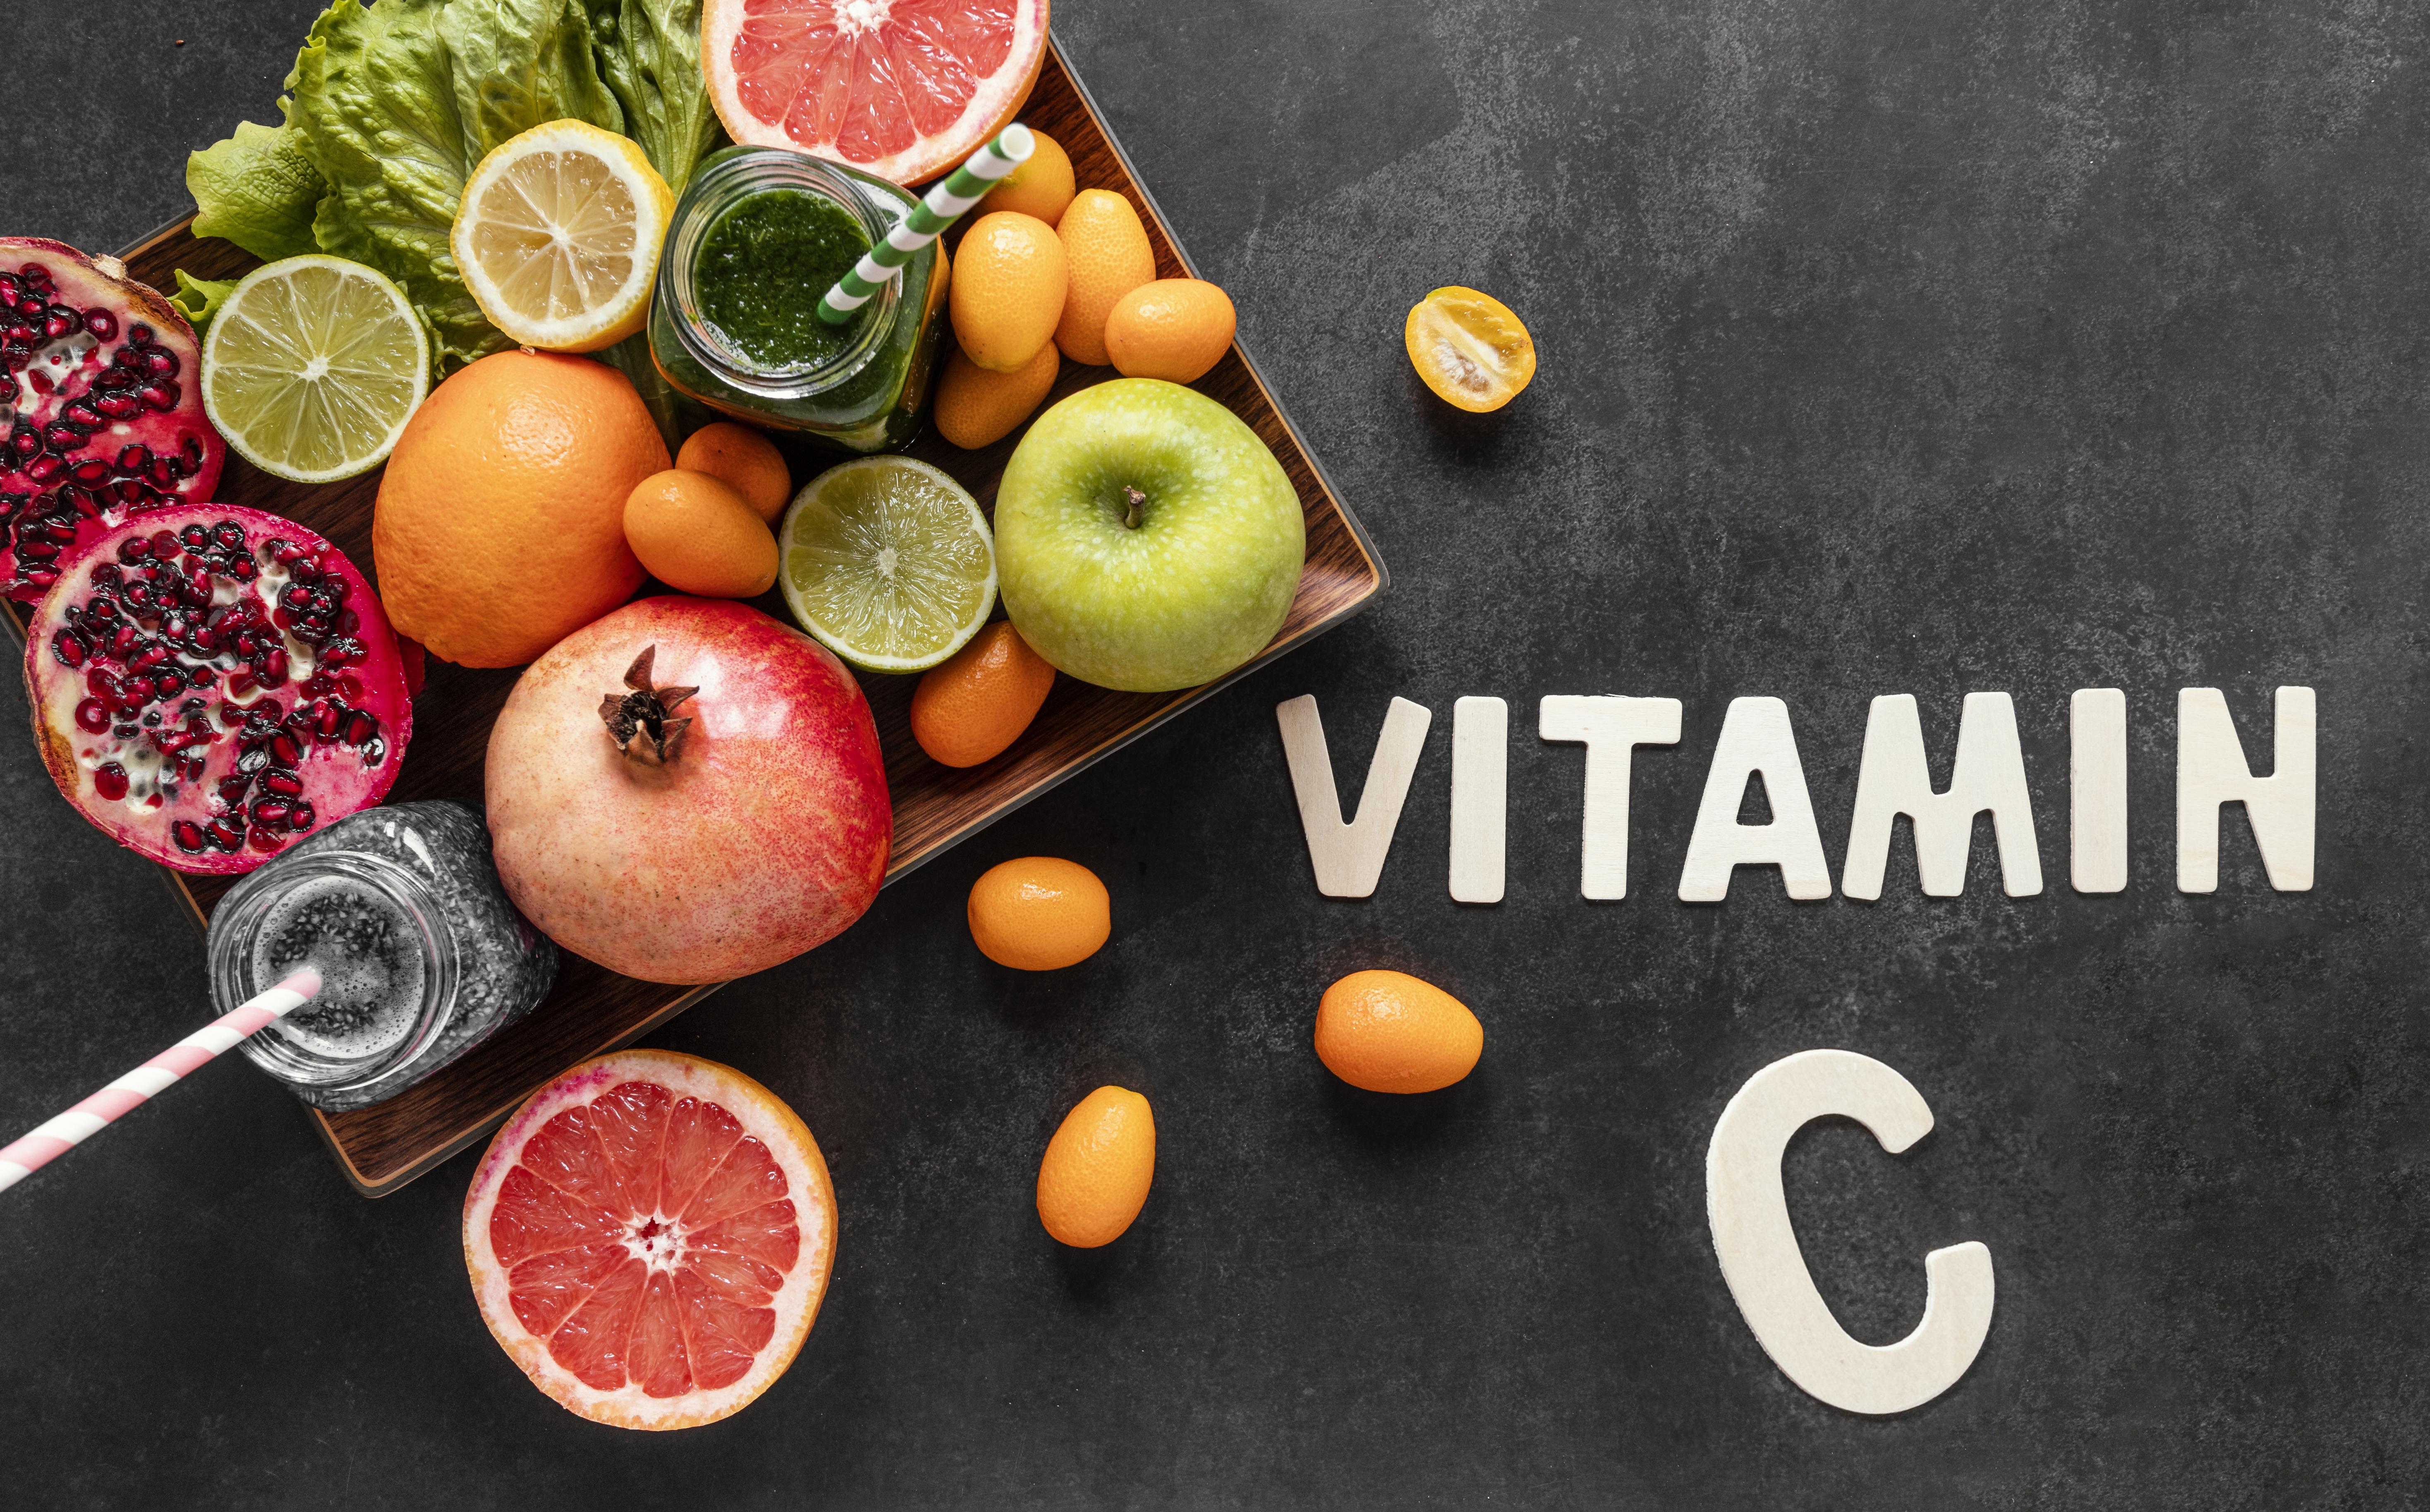 비타민C가 풍부한 과일들은 면역력 강화에 좋다 